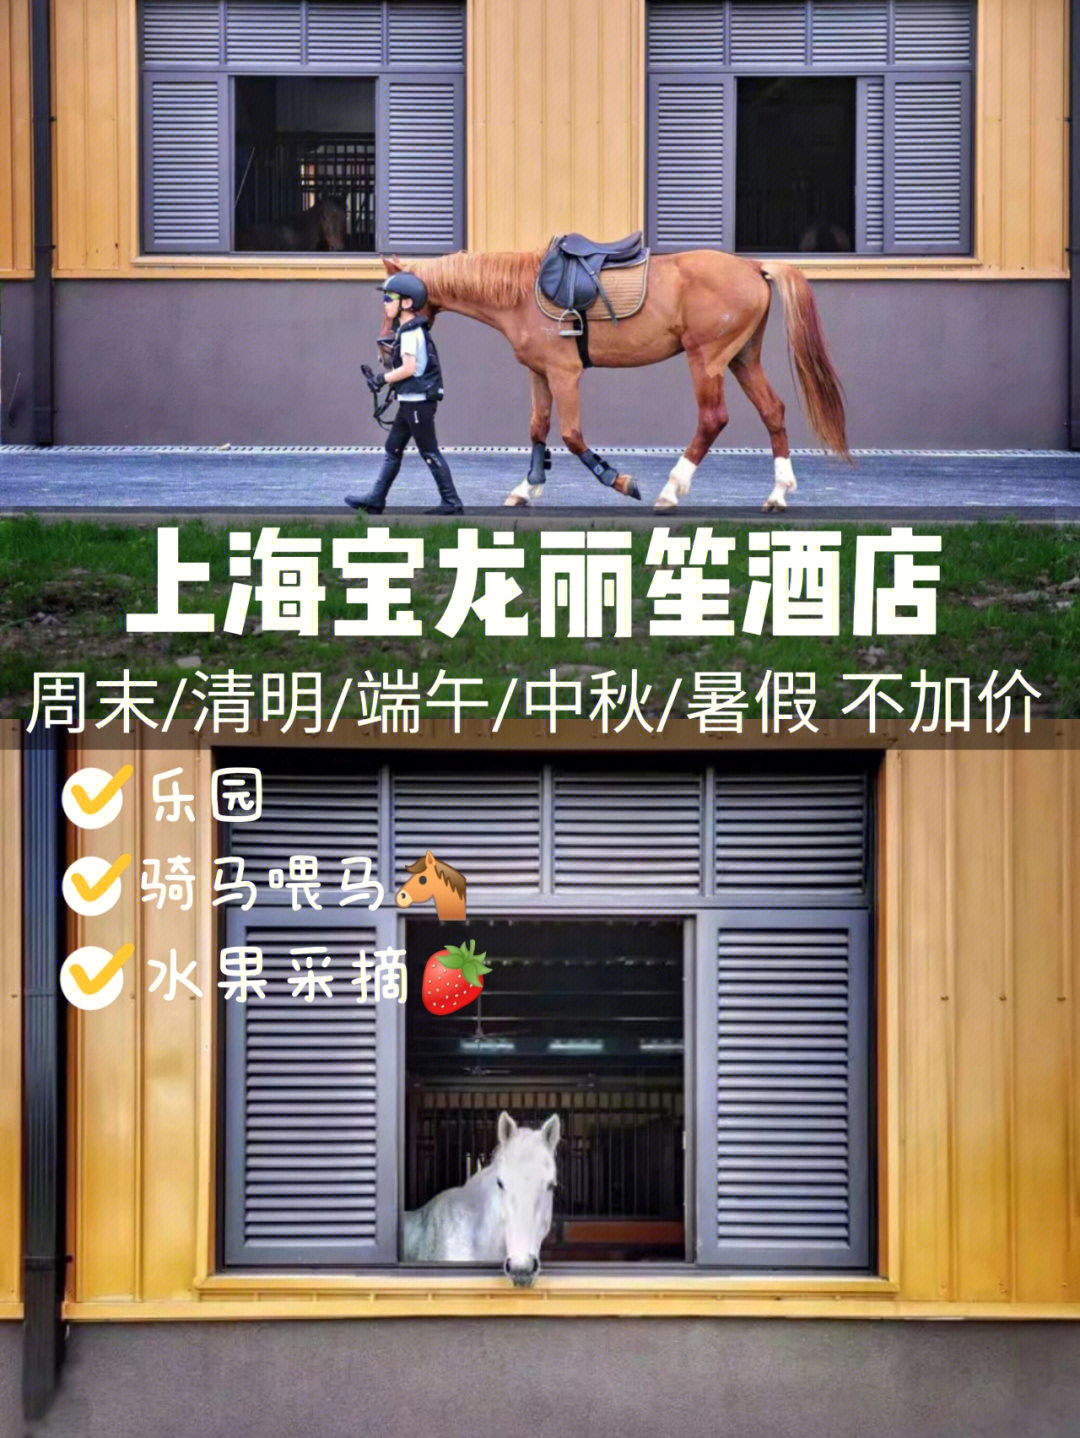 一站式遛娃骑马采摘上海宝龙丽笙酒店